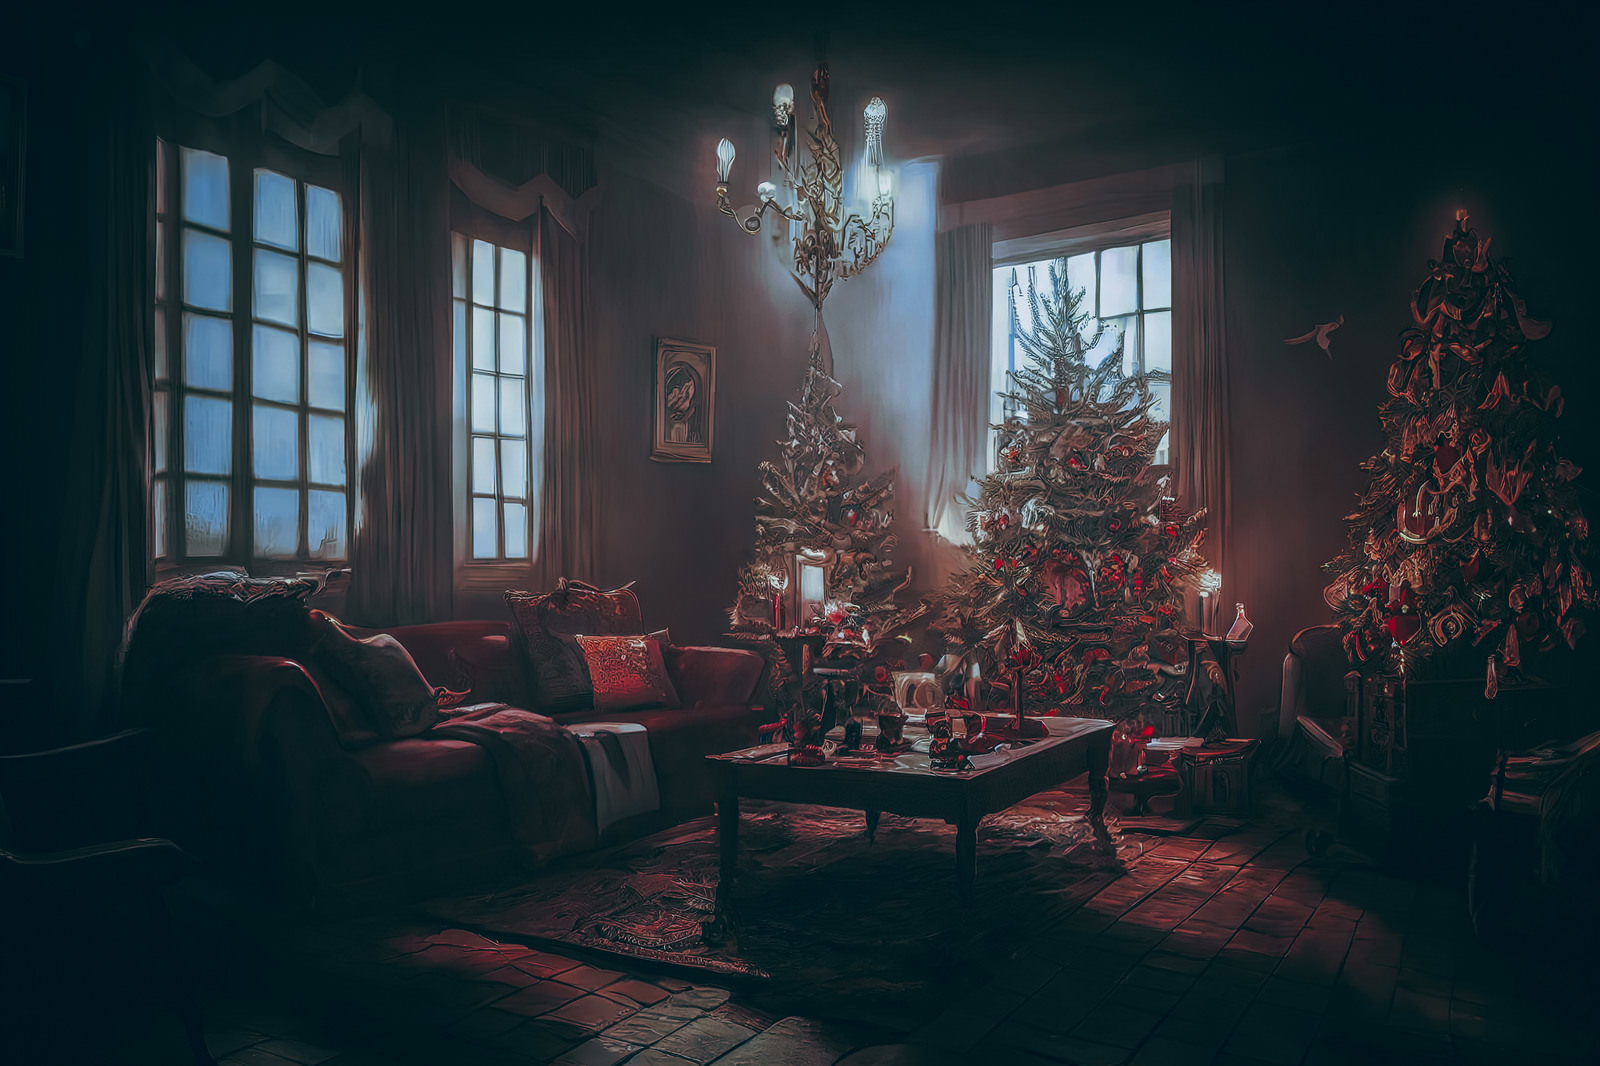 「消し忘れたリビングの照明とクリスマスツリー | フリー素材のぱくたそ」の写真